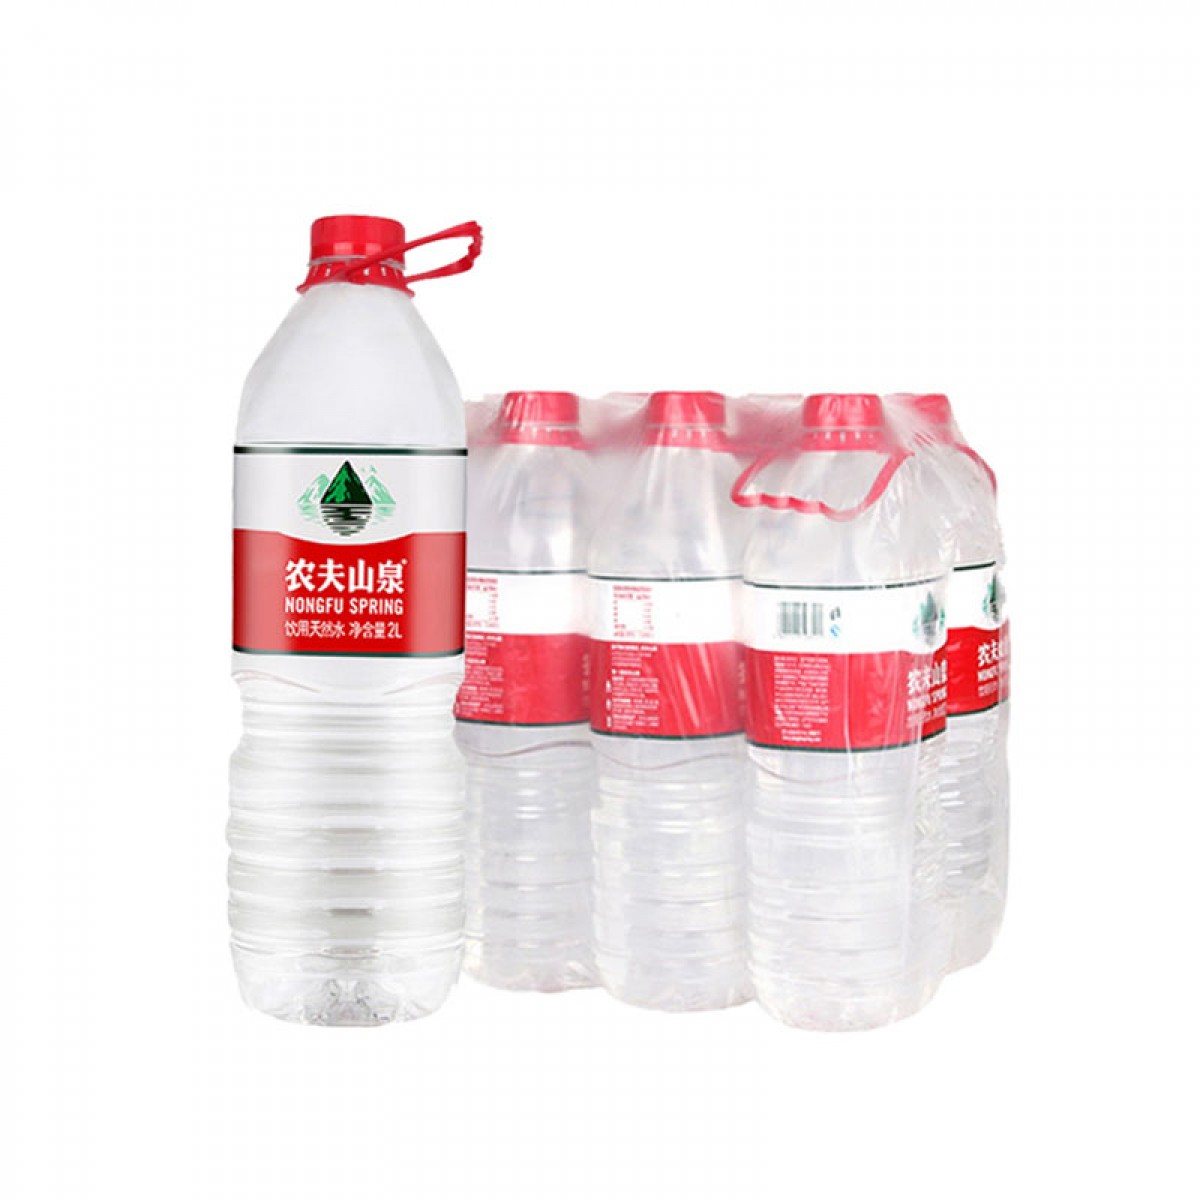 农夫山泉 饮用天然水 瓶装 2LX8瓶 整箱